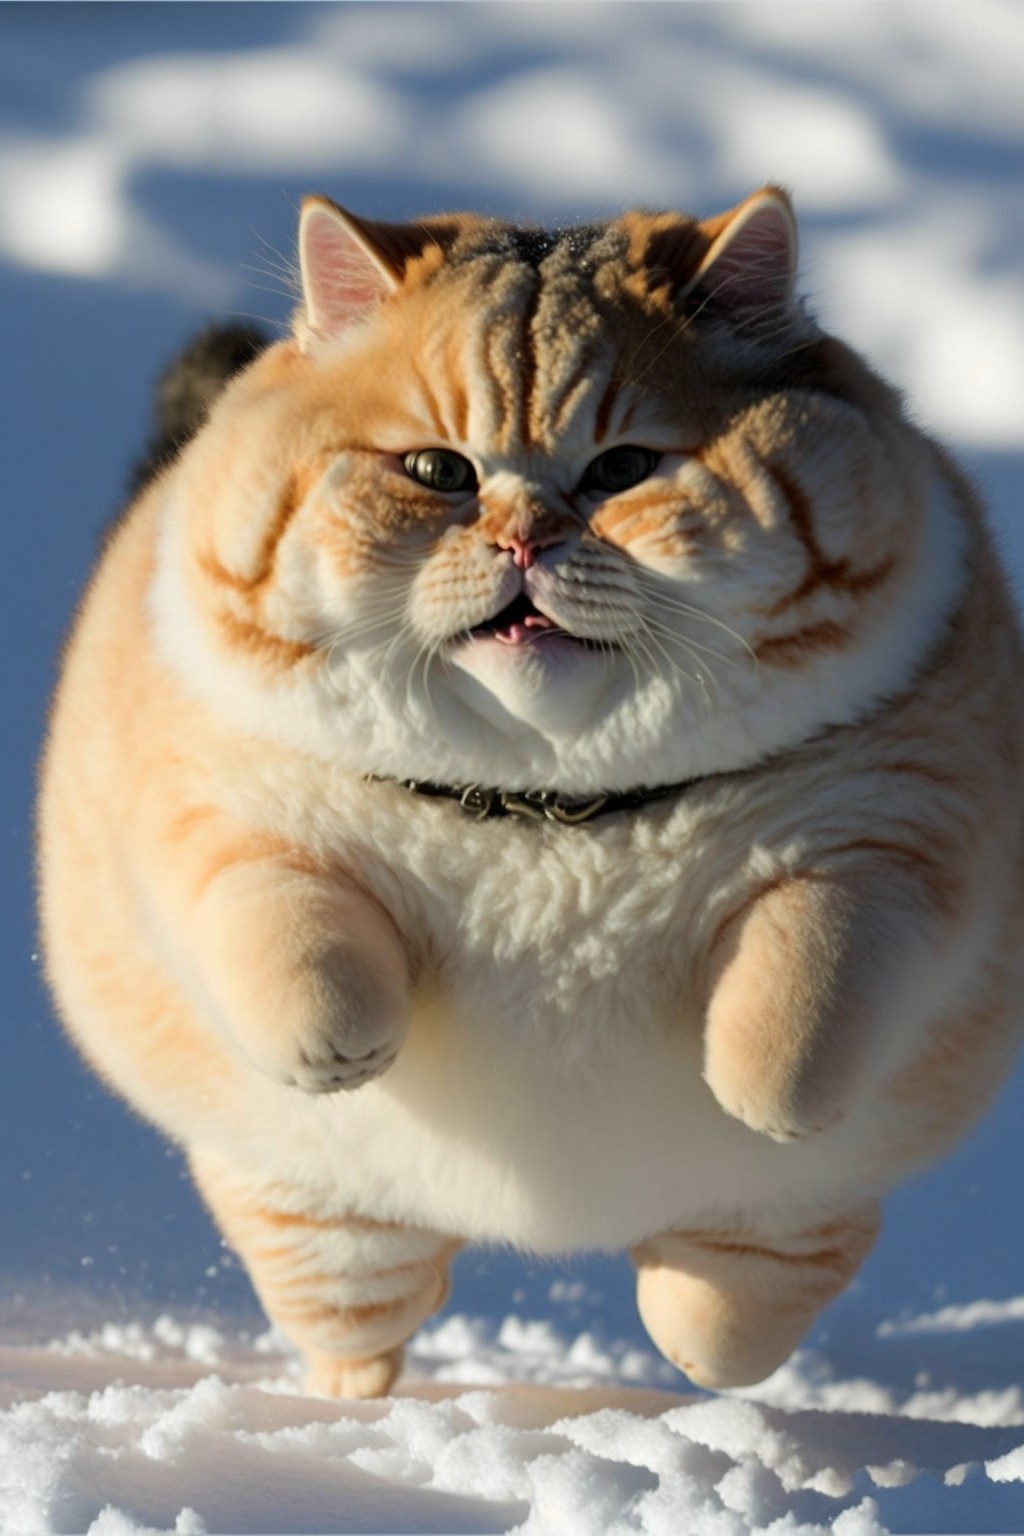 A cute big fat cat